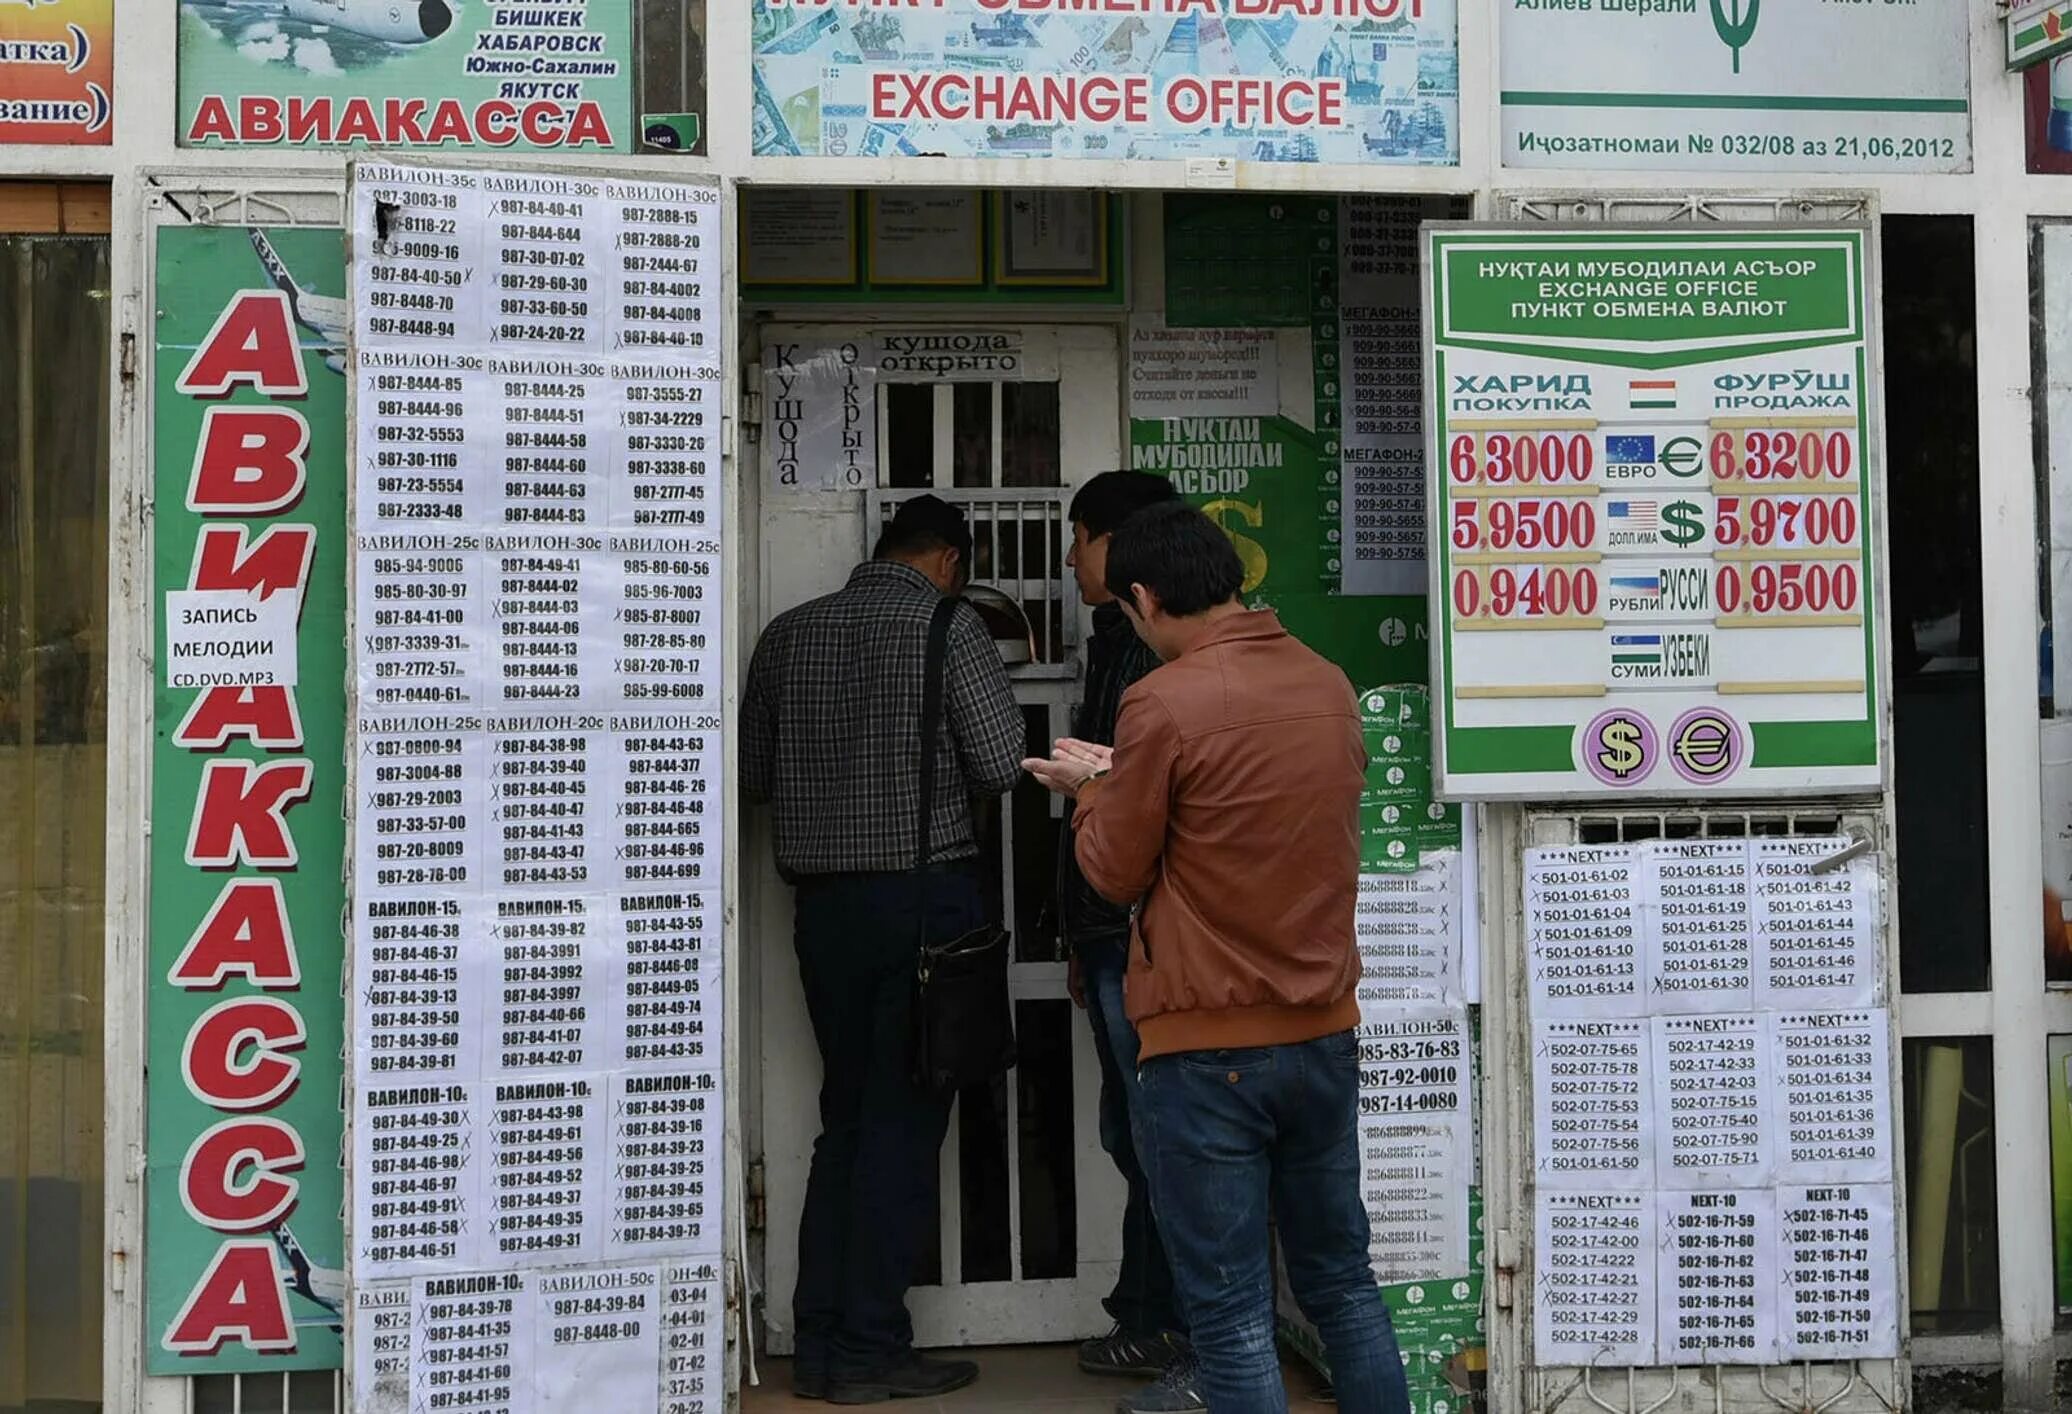 1000 сомон рублях. Обменные пункты в Таджикистане. Курс рубля к Сомони. Обмен валюты. Курсы валют в Таджикистане.